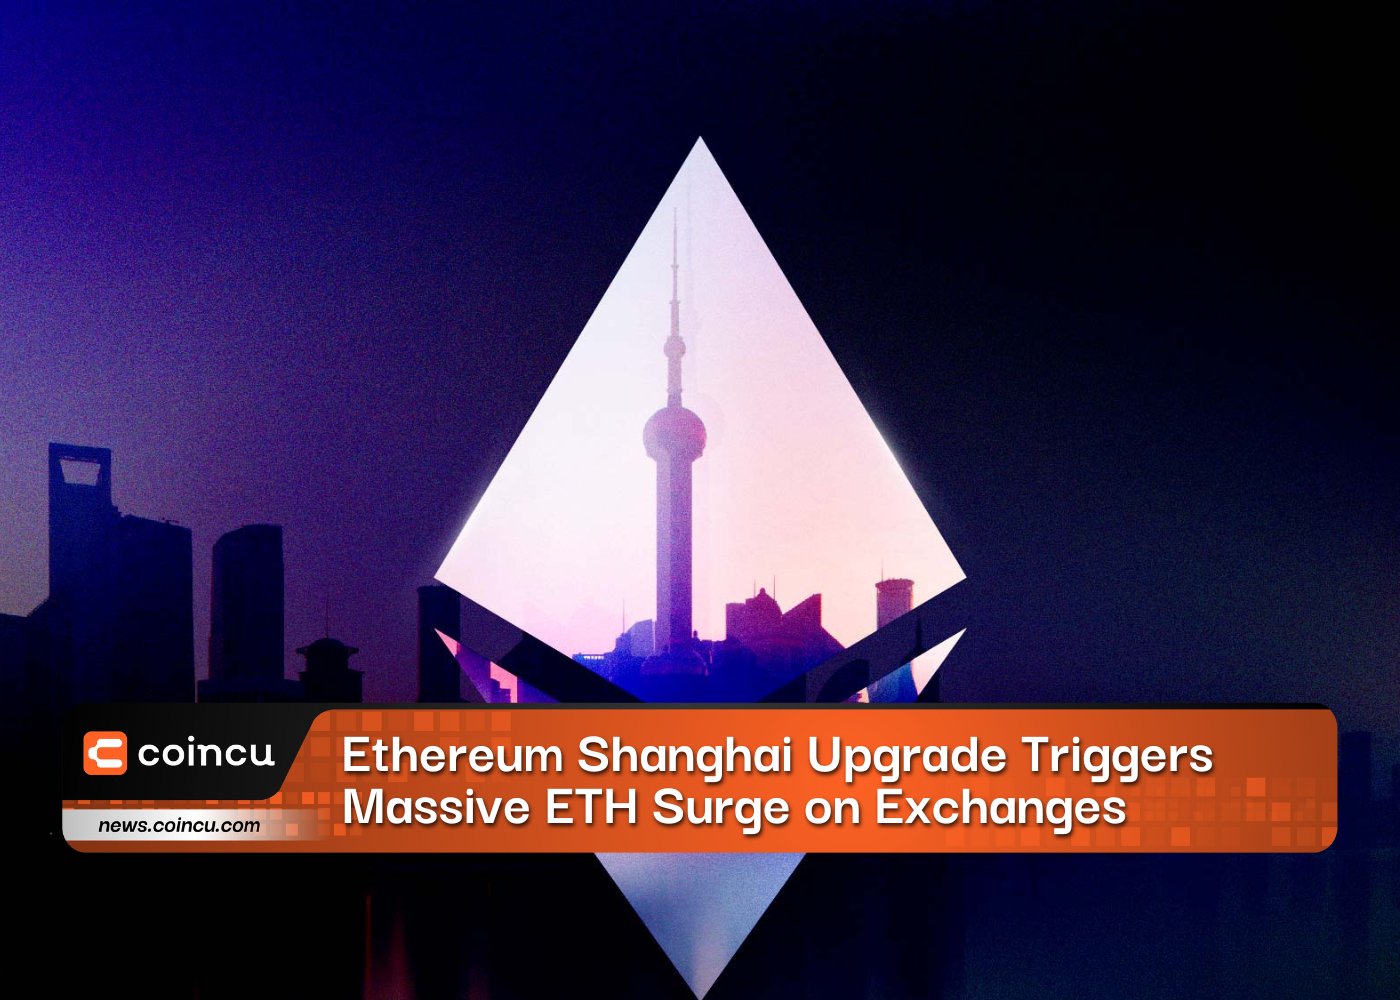 Gatilhos de atualização do Ethereum Shanghai